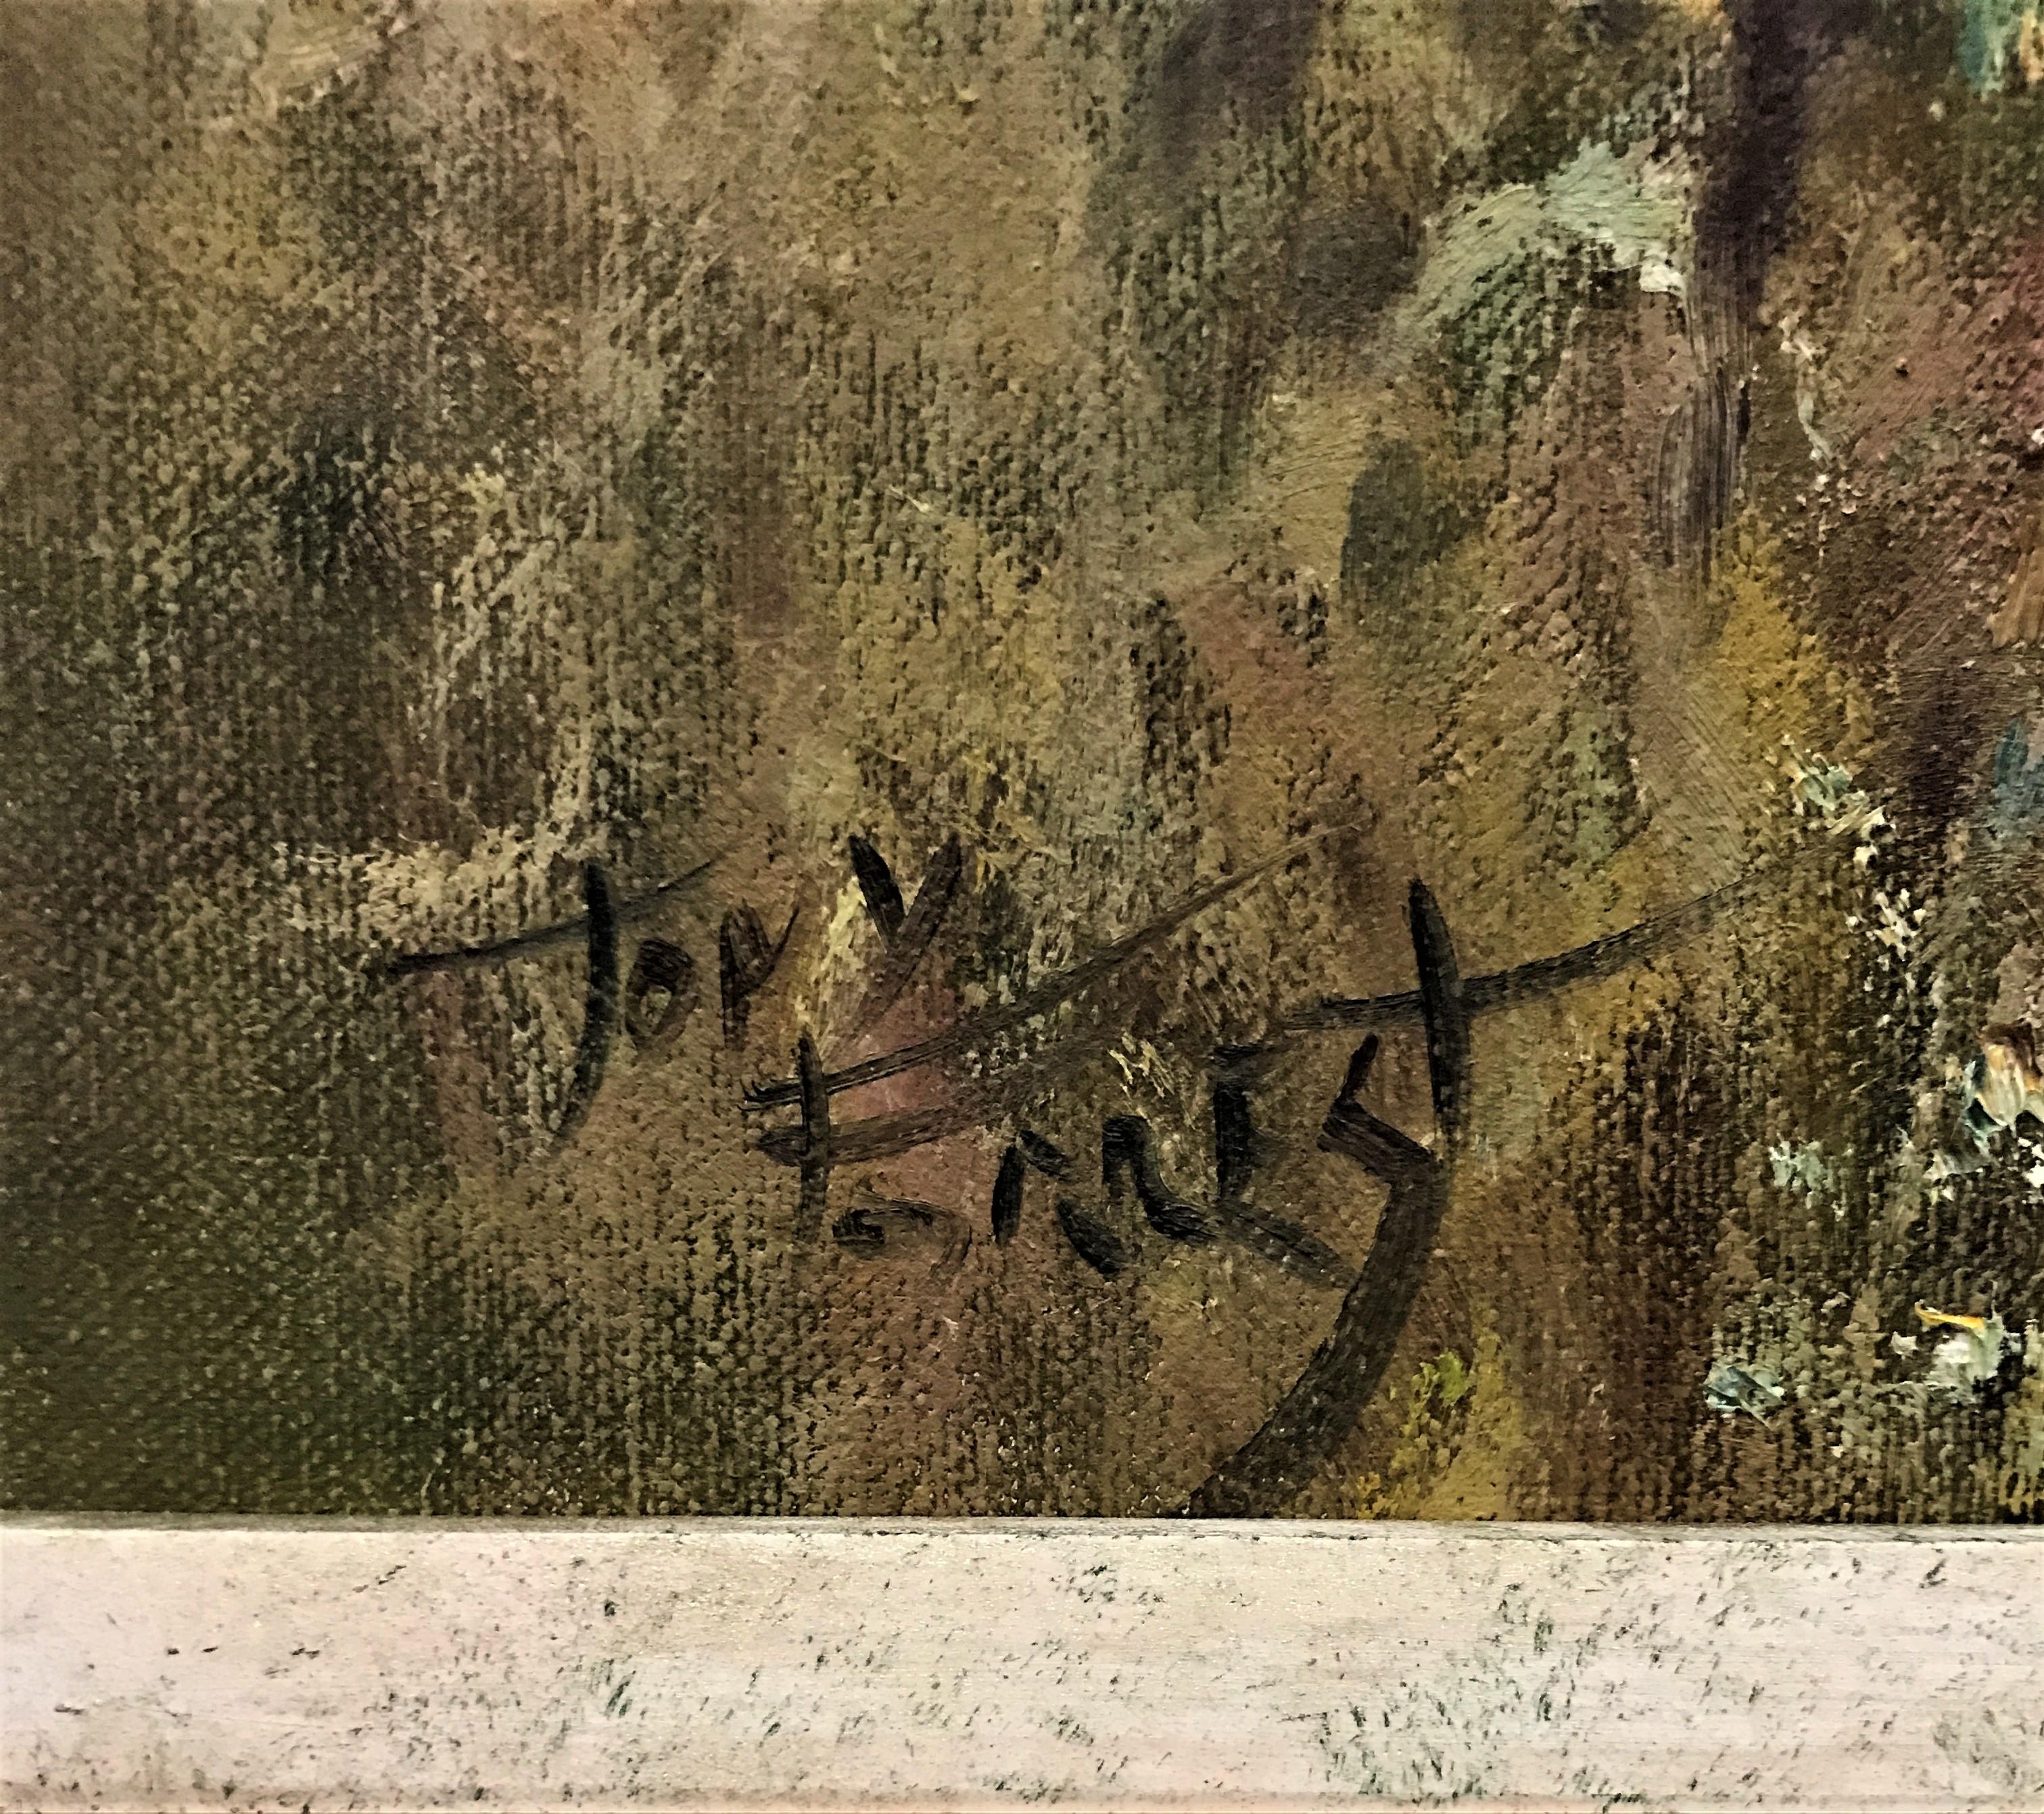 Tiger & Würfel in Gräsern, Öl auf Leinwand, britischer realistischer Maler des 20. Jahrhunderts (Braun), Landscape Painting, von Tony Forrest